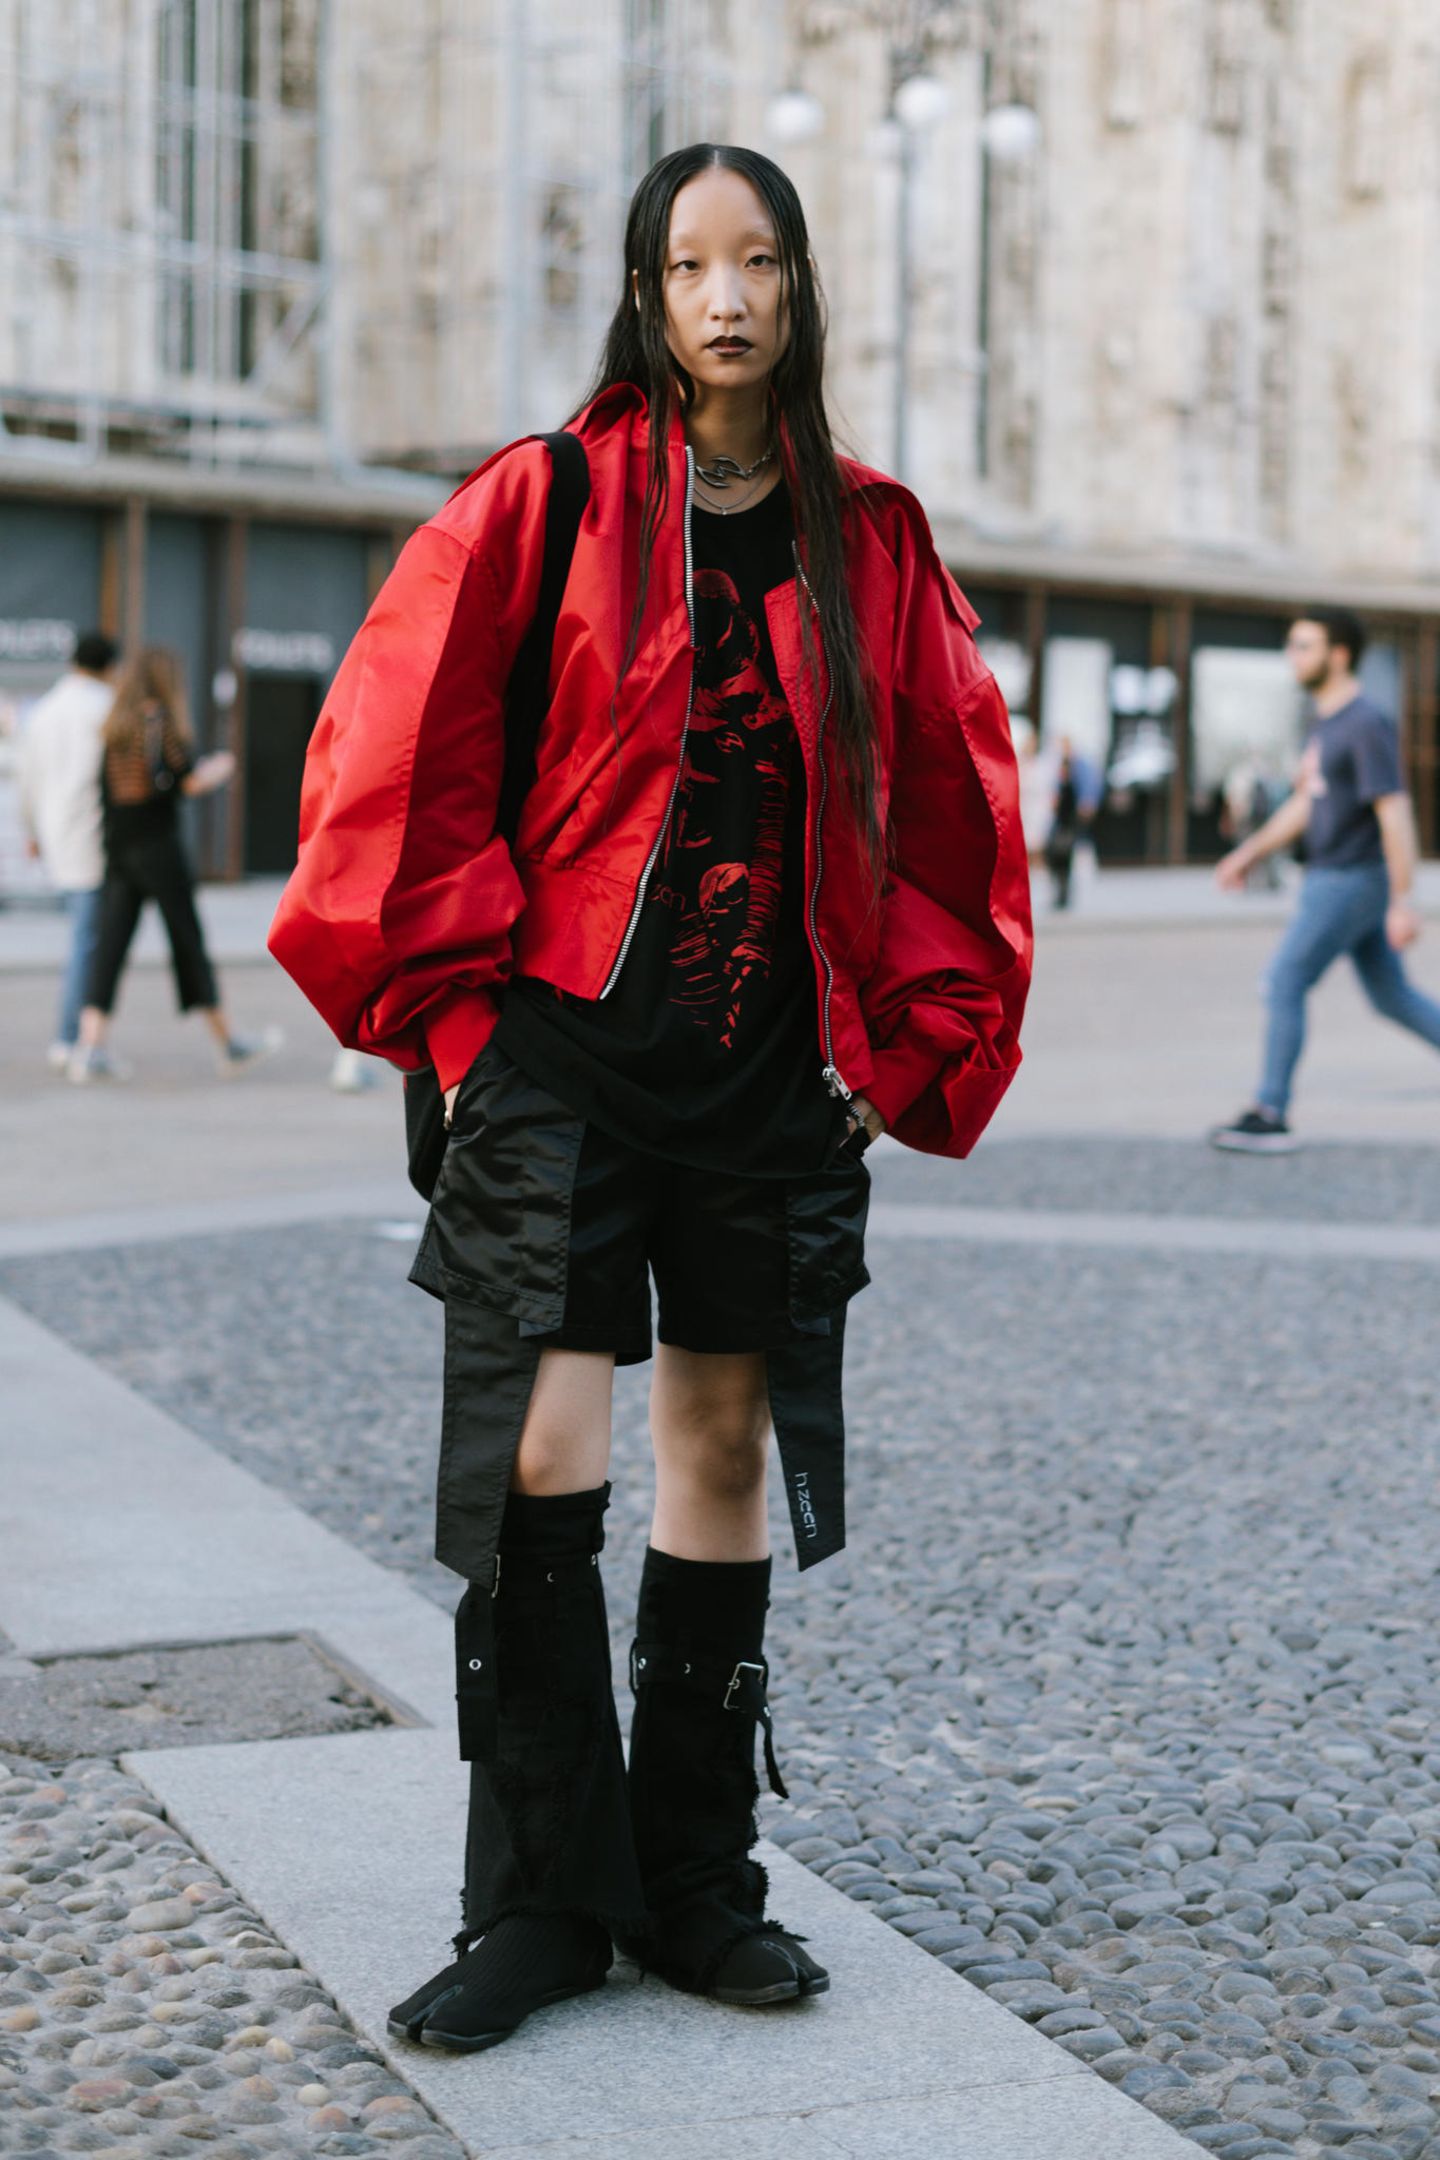 Dass Rot zu den Trendfarben der Mailänder Modewoche gehört, hat diese Besucherin scheinbar schon kommen sehen und zeigt sich passend in roter XXL-Bomberjacke.